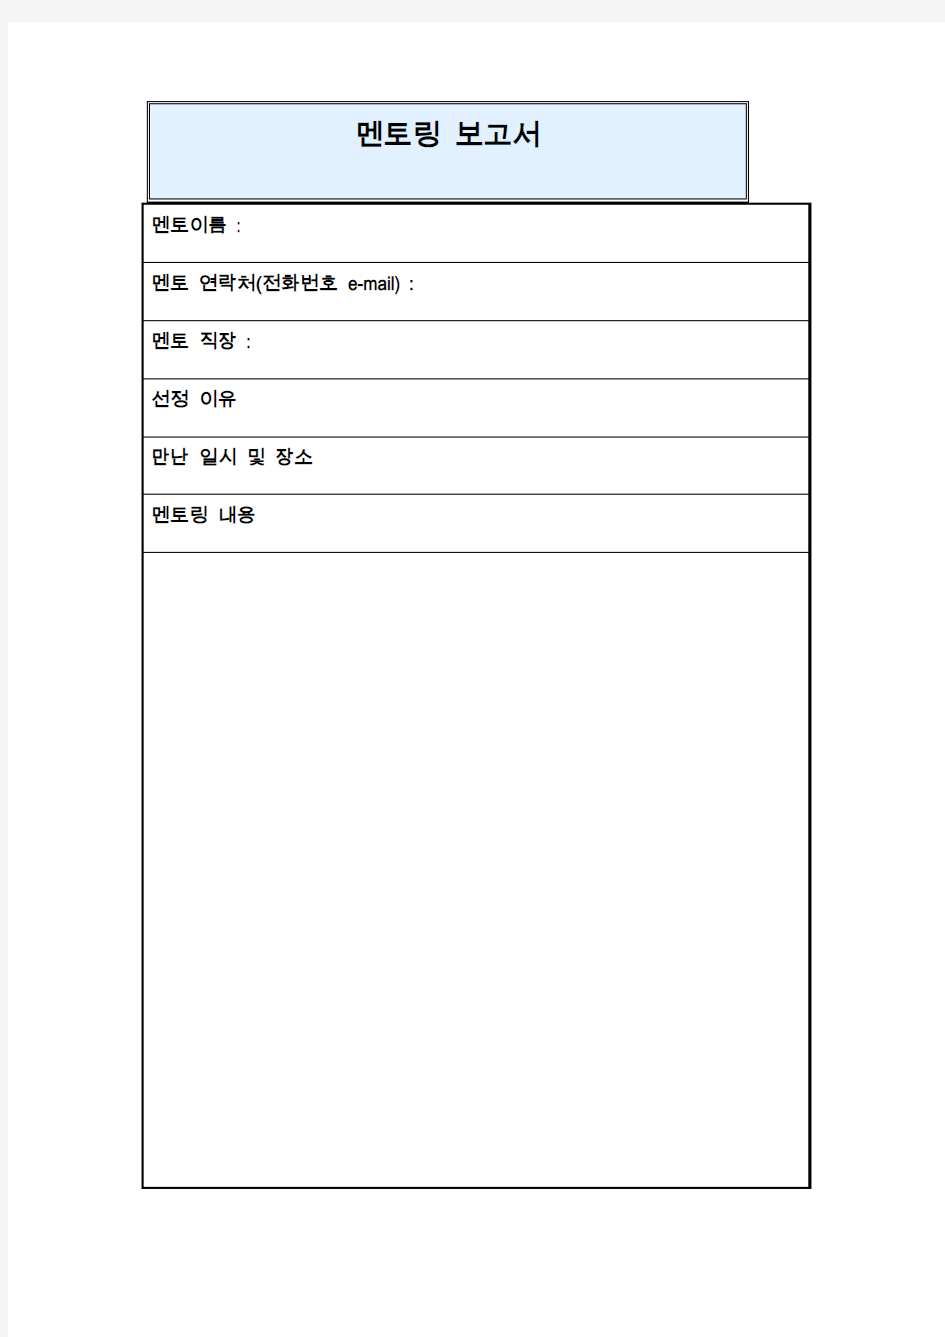 指导报告书模板(韩文)